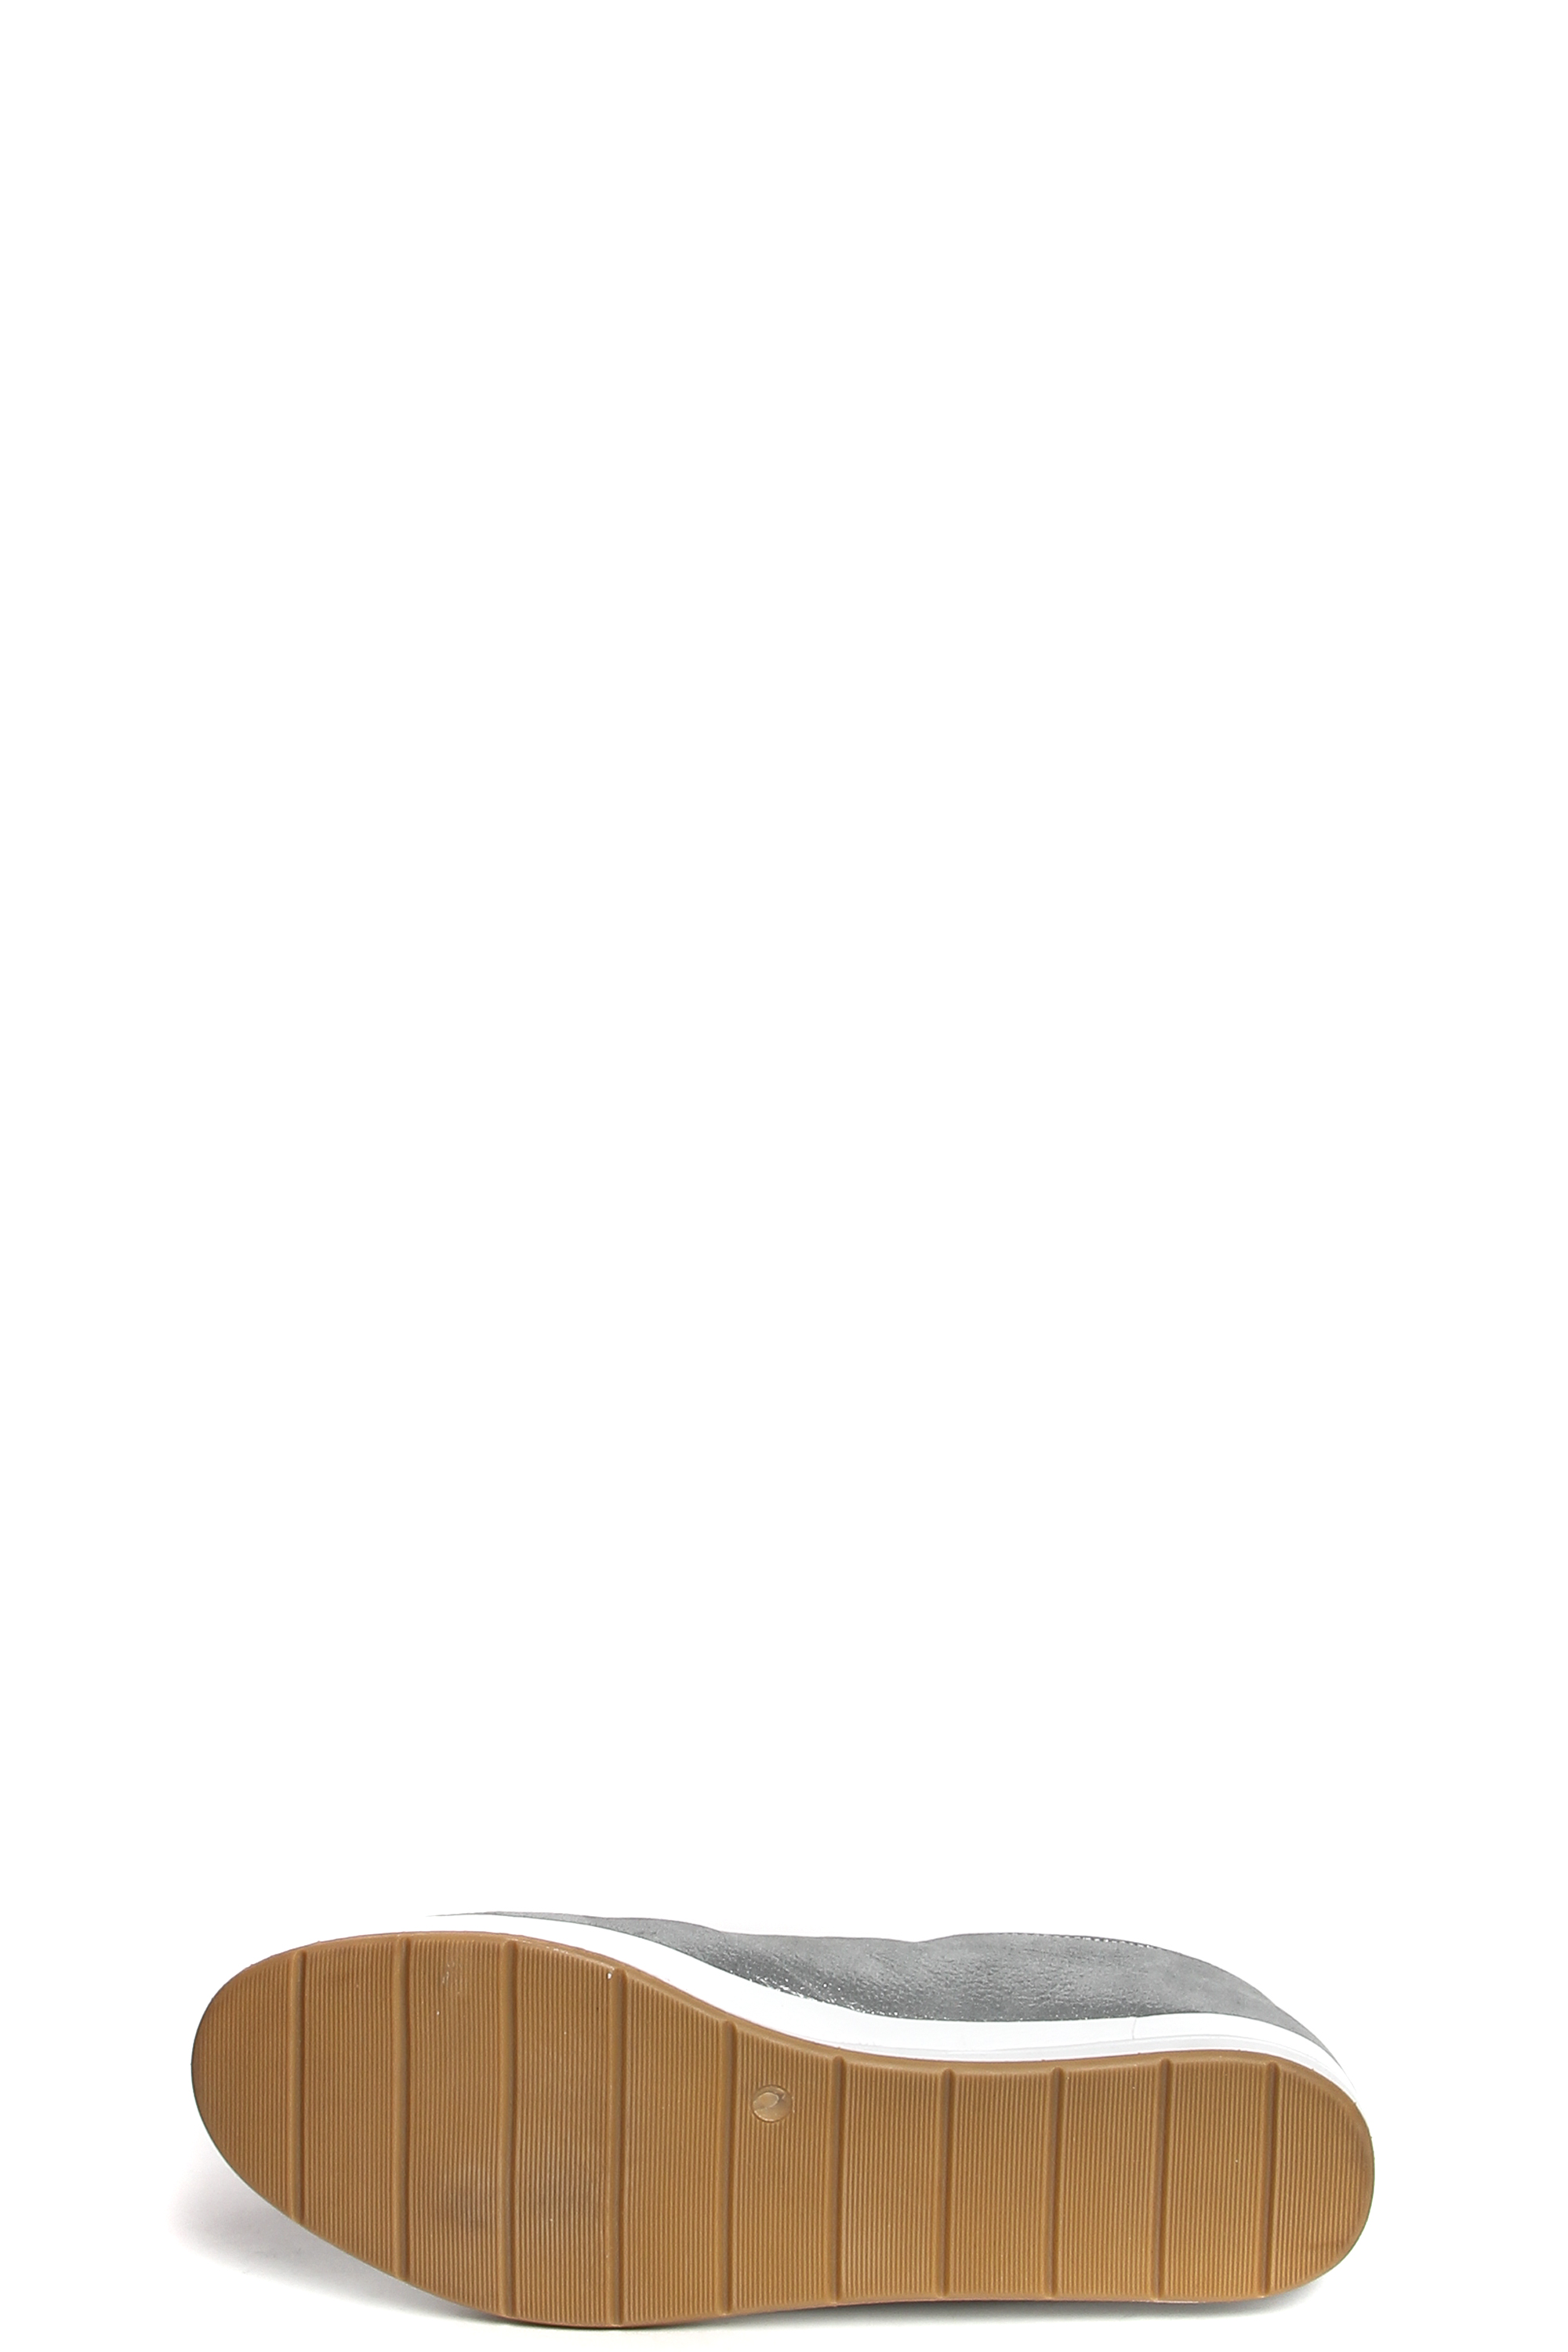 181462-1-2111 полуботинки  взрослый  жен. летн. натуральная кожа (сотен)/натуральная кожа/термоэластопласт серый Milana